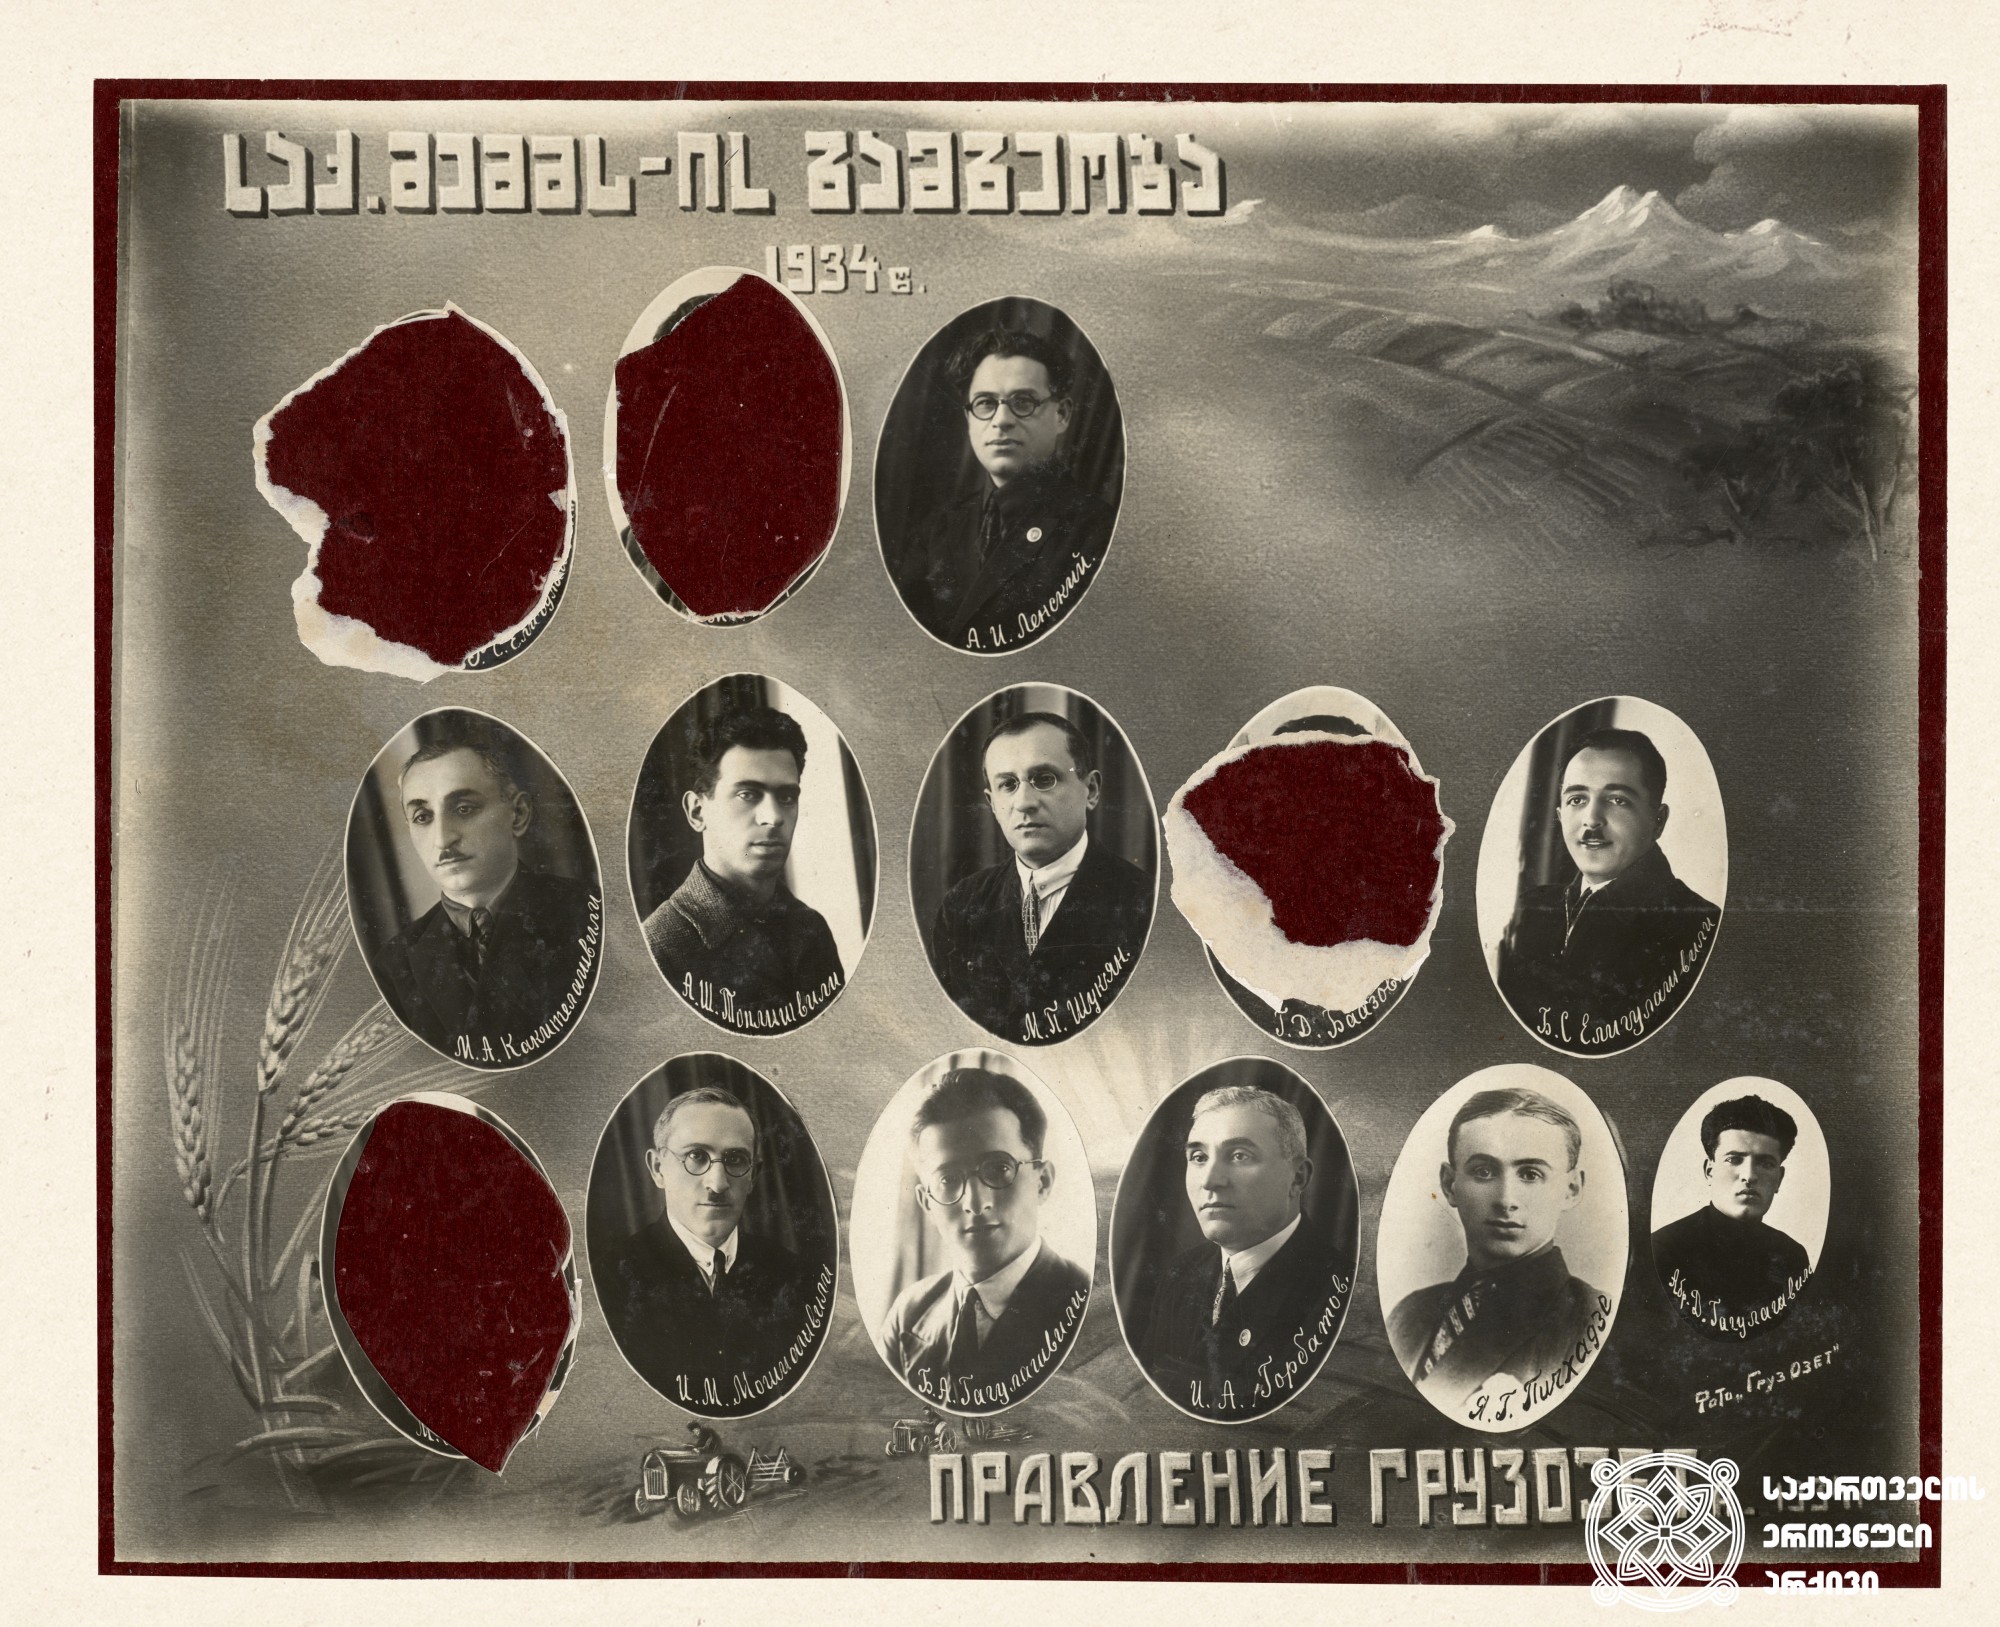 საქართველოს მშრომელ ებრაელთა მიწათმომწყობი საზოგადოების გამგეობა (საქ. მემმსი) <br>
ფოტოზე რეპრესირებულ პირთა სახეები ამოშლილია, მათ შორისაა ცნობილი მწერალი გერცელ ბააზოვი (1904-1938).<br>
ფოტო: 1934 წელი. <br>
Governing board of the landlord society of the Jew workers in Georgia. <br>
The faces of the repressed persons are erased on the photo, among them is the famous writer – Gerzel Baazov (1904-1938). <br>
1934.